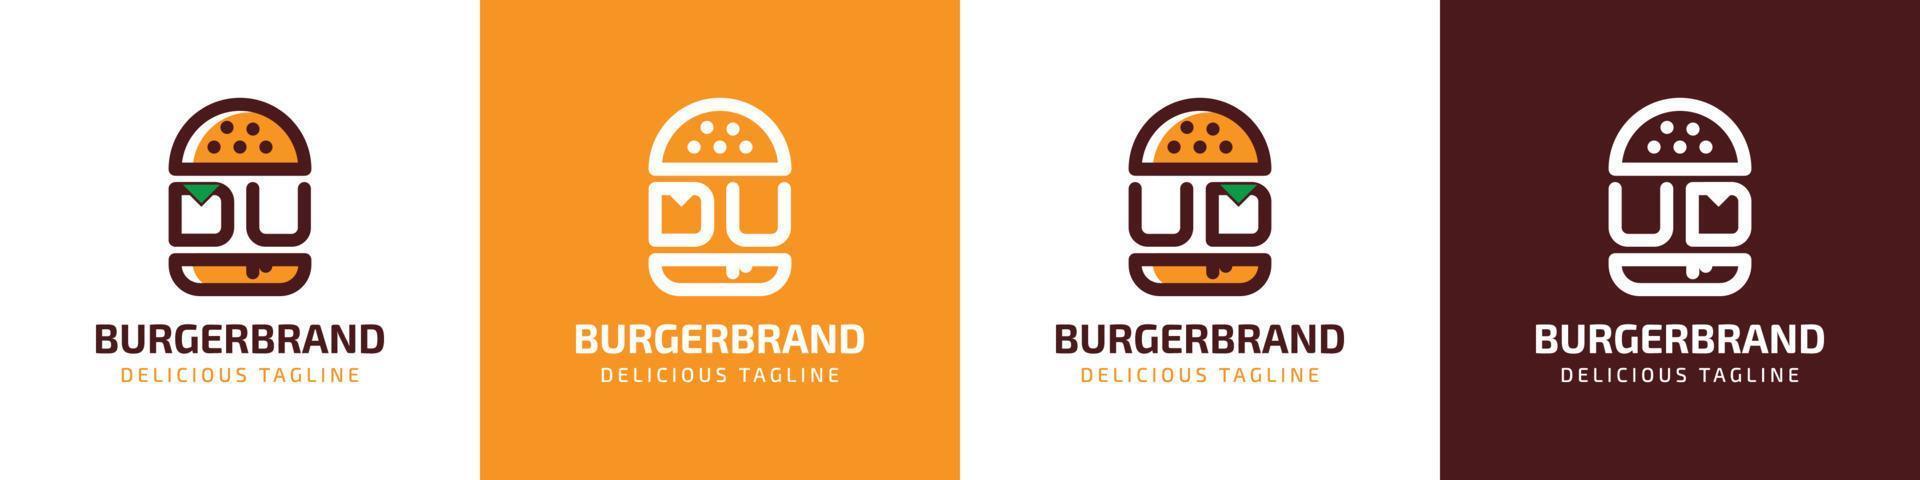 Brief du und ud Burger Logo, geeignet zum irgendein Geschäft verbunden zu Burger mit du oder ud Initialen. vektor